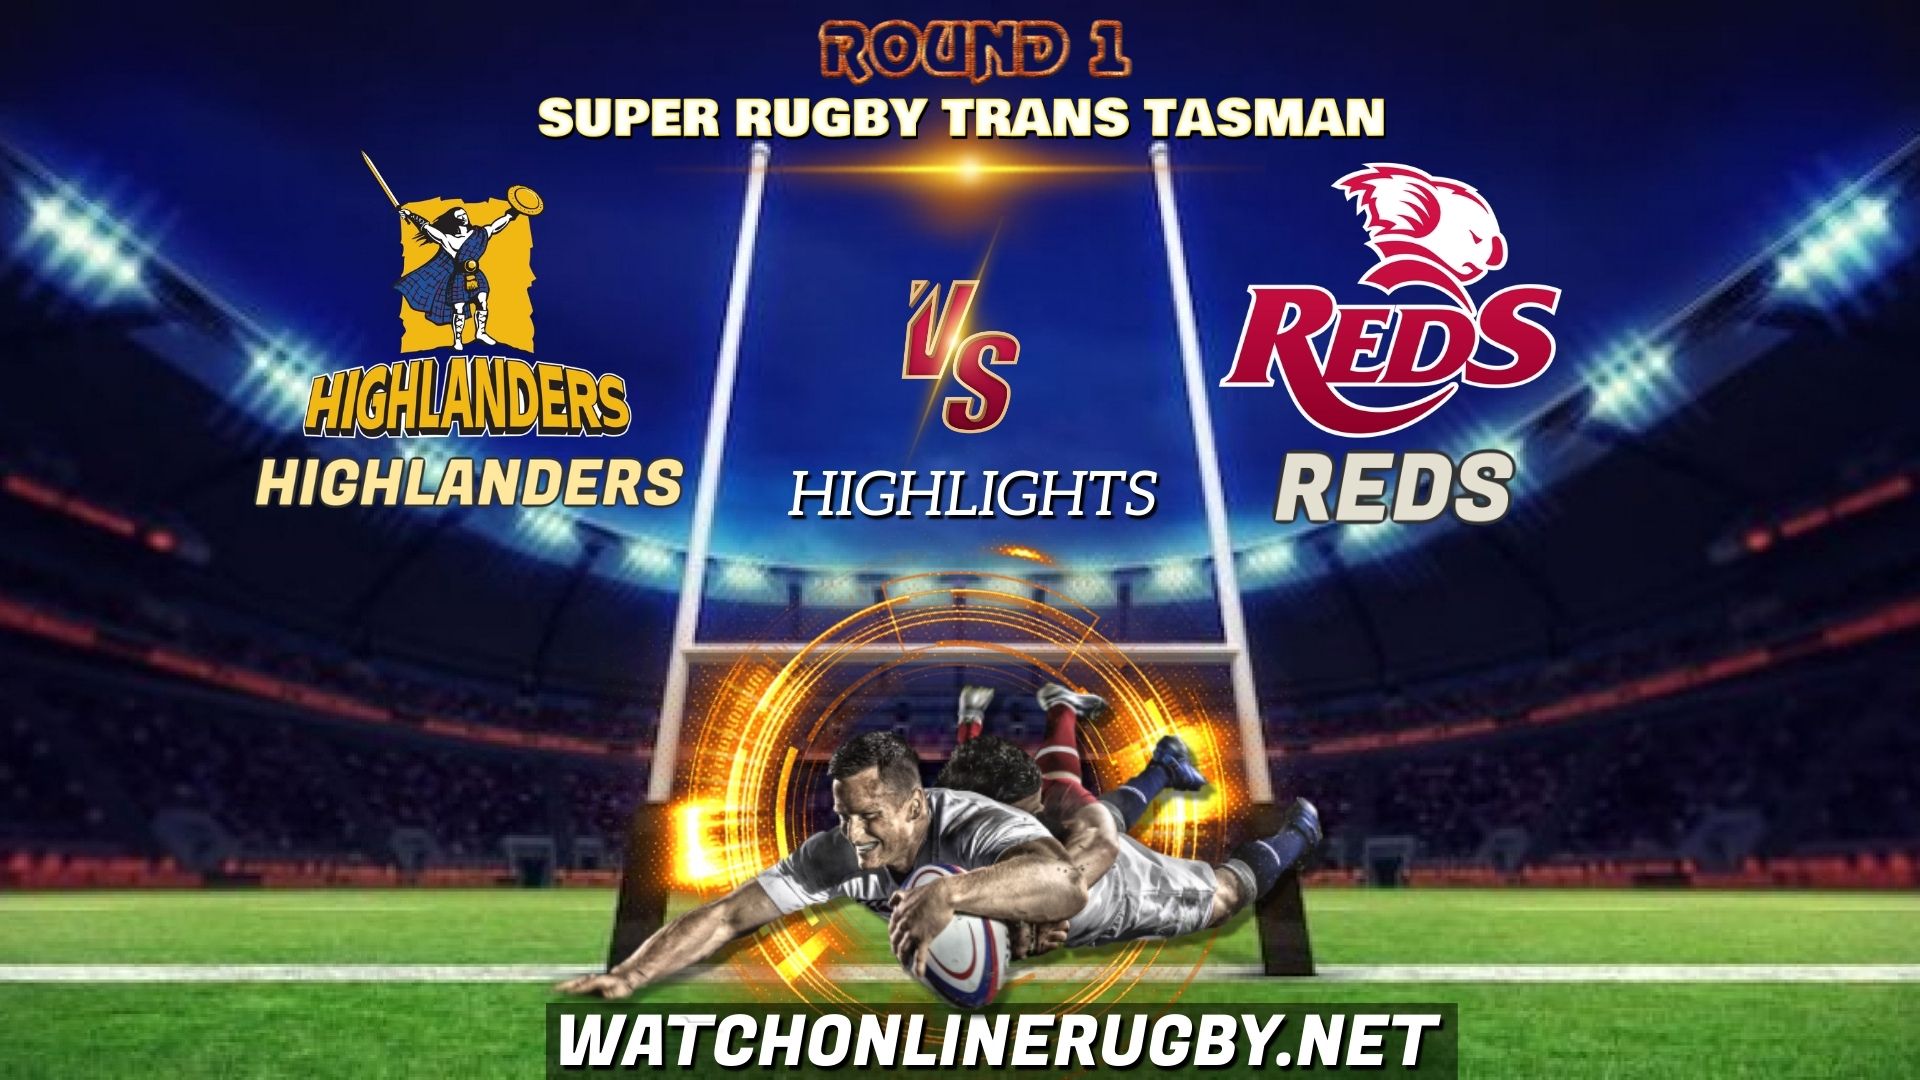 Highlanders Vs Reds Super Rugby Trans Tasman 2021 RD 1